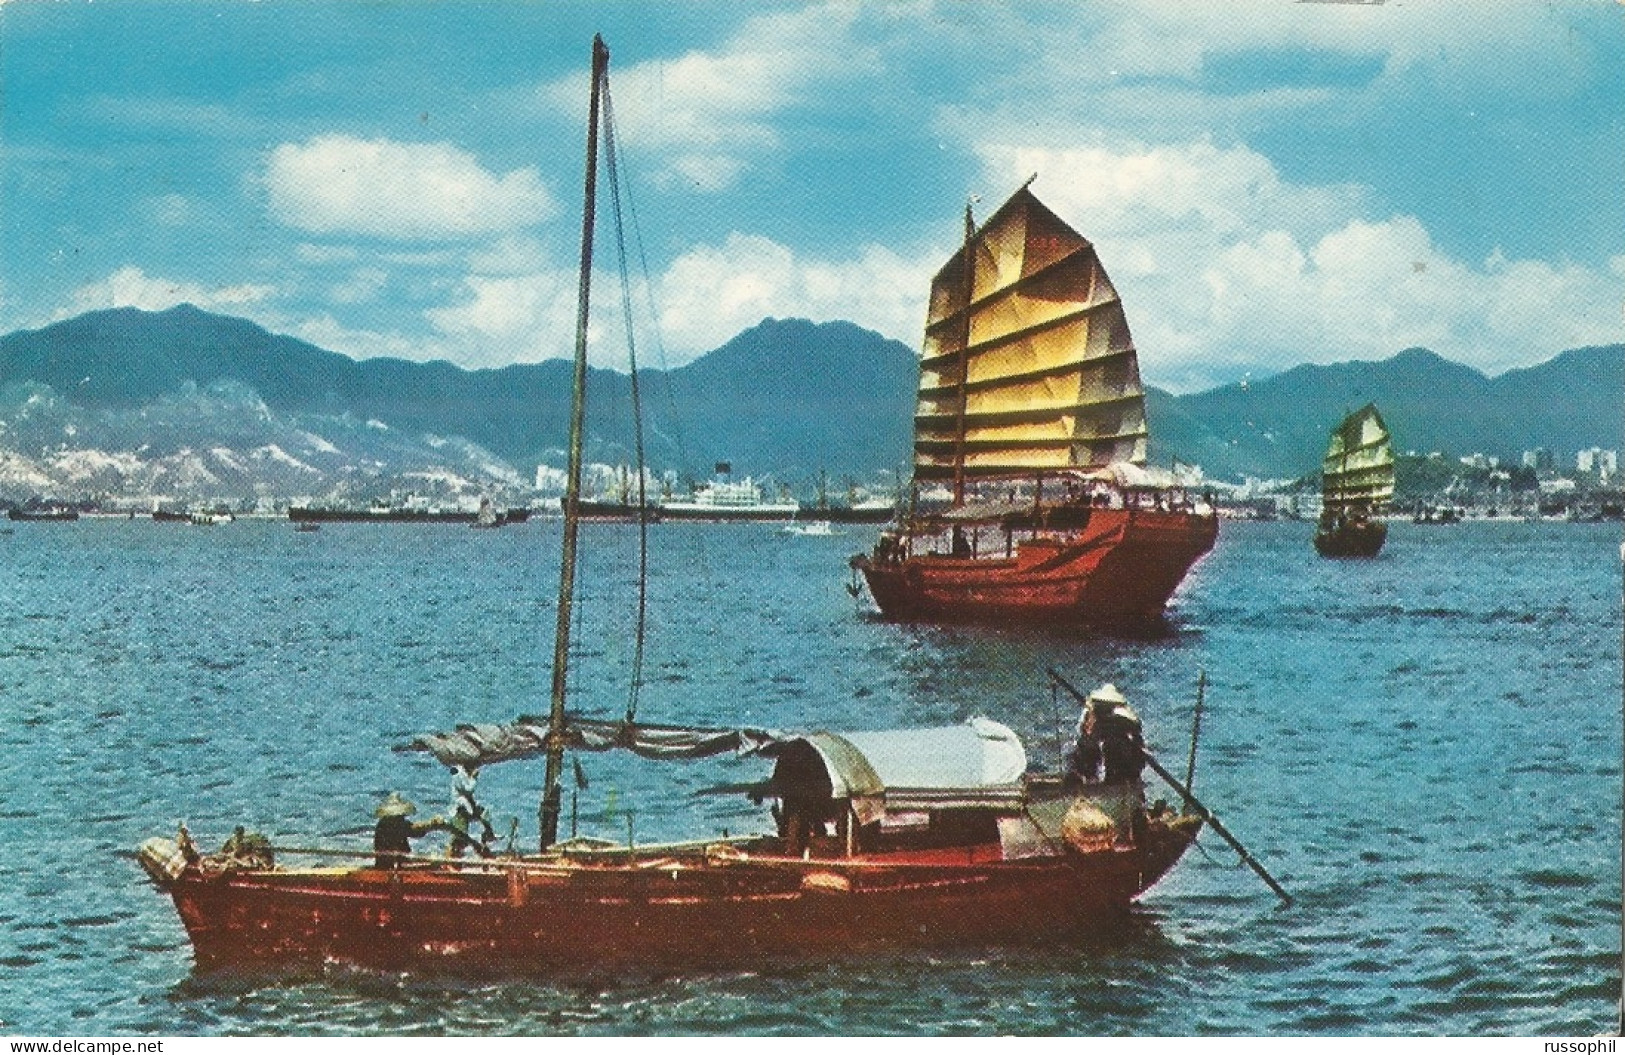 CHINA - HONG KONG - CARGO JUNKS IN HONG KONG HARBOUR - DEAR DOCTOR - ABOTT - 1960 - Cina (Hong Kong)